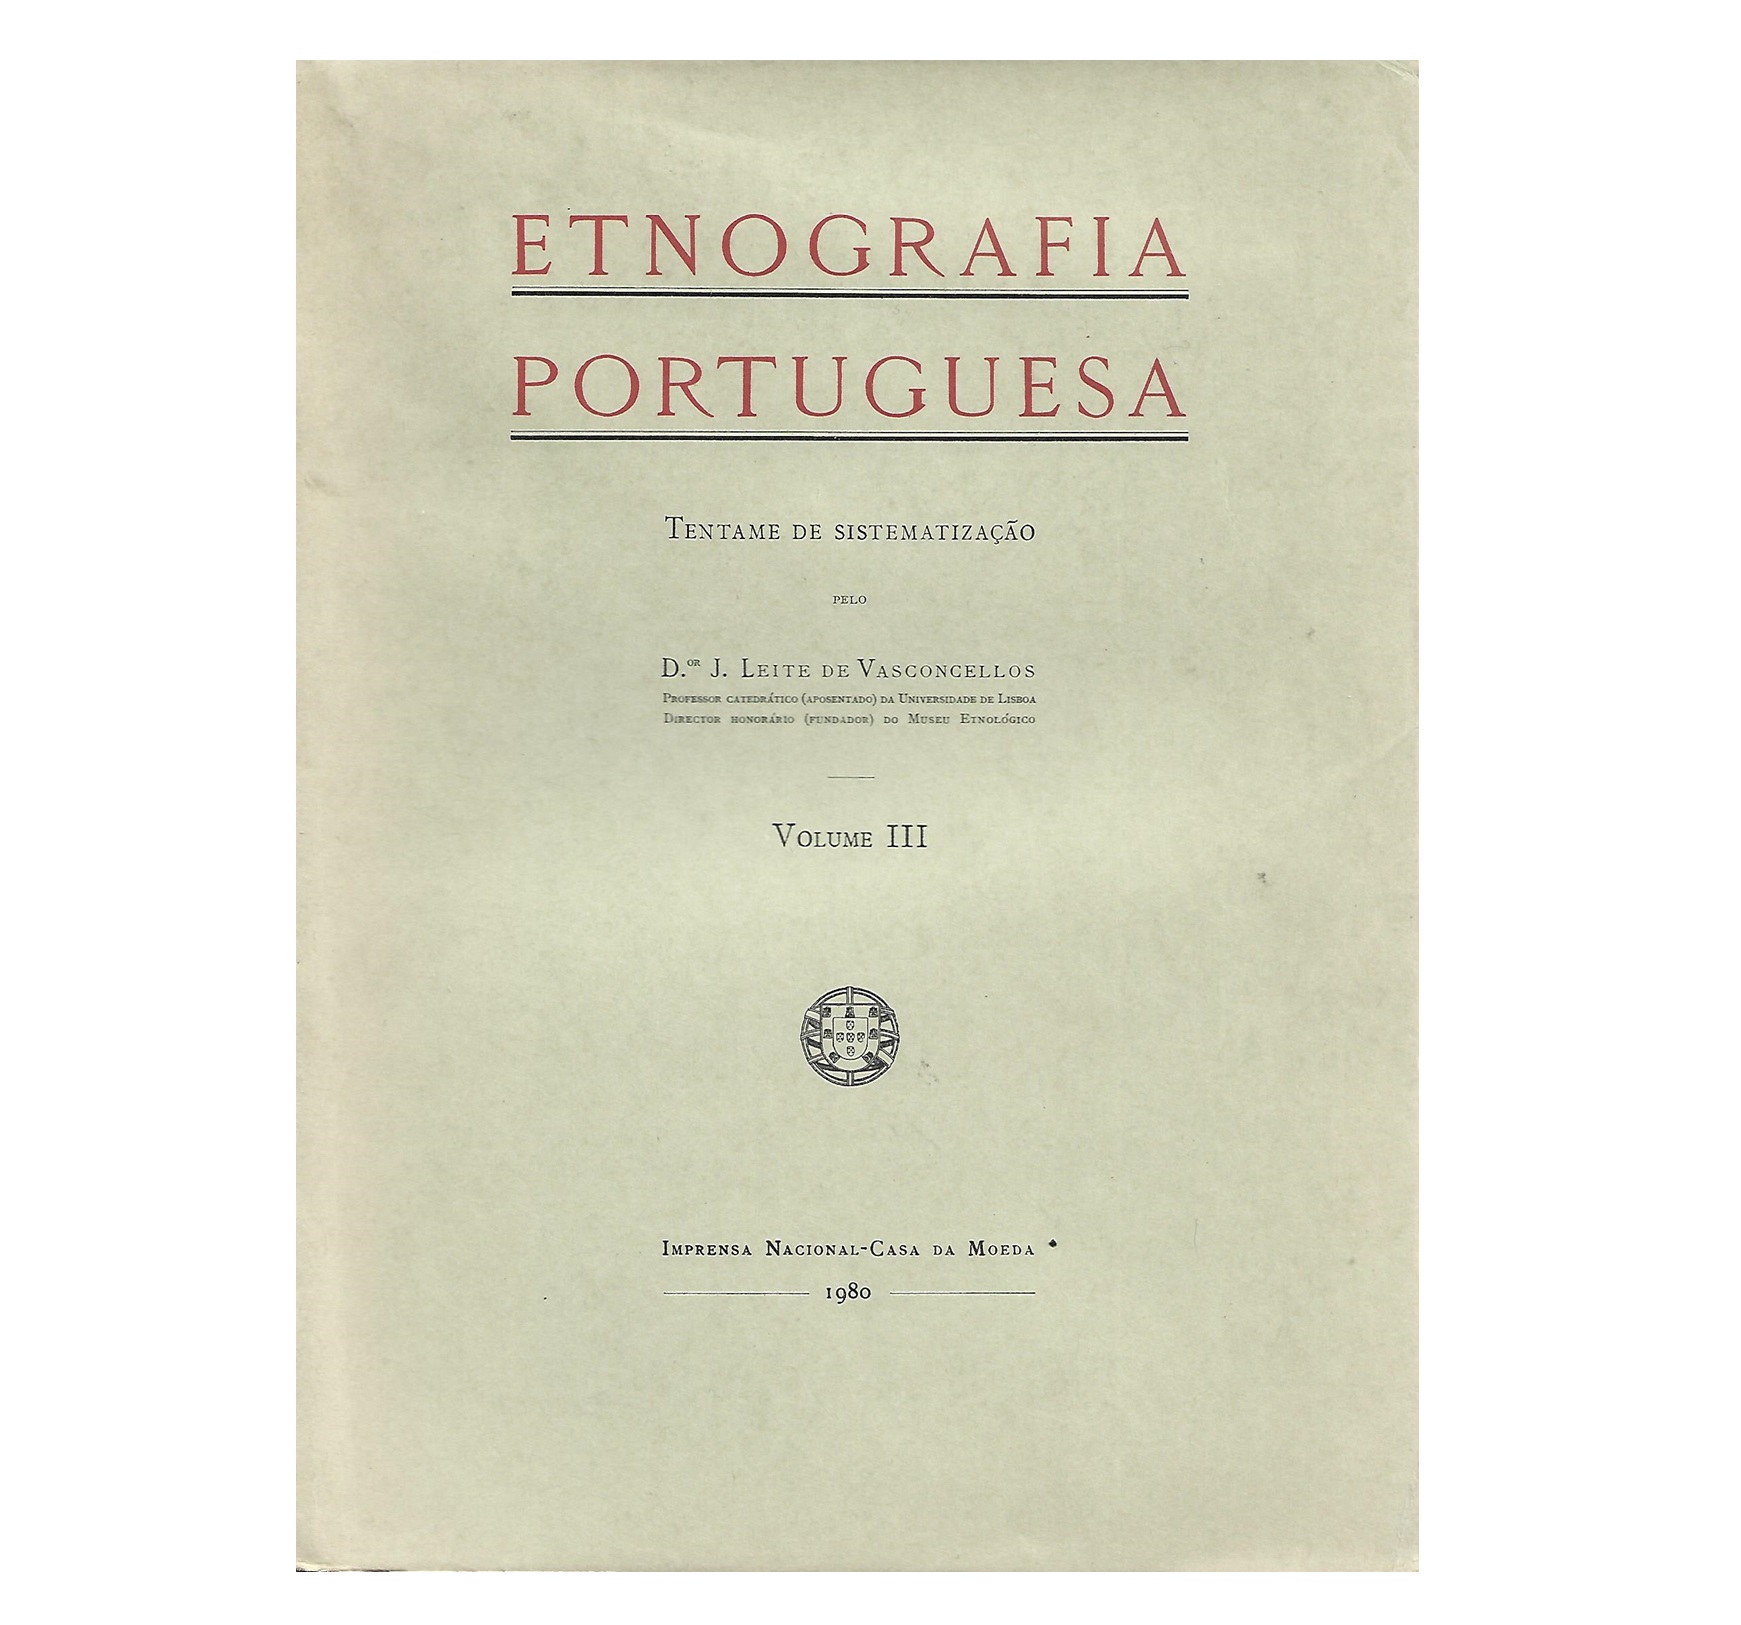  ETNOGRAFIA PORTUGUESA. VOL. III